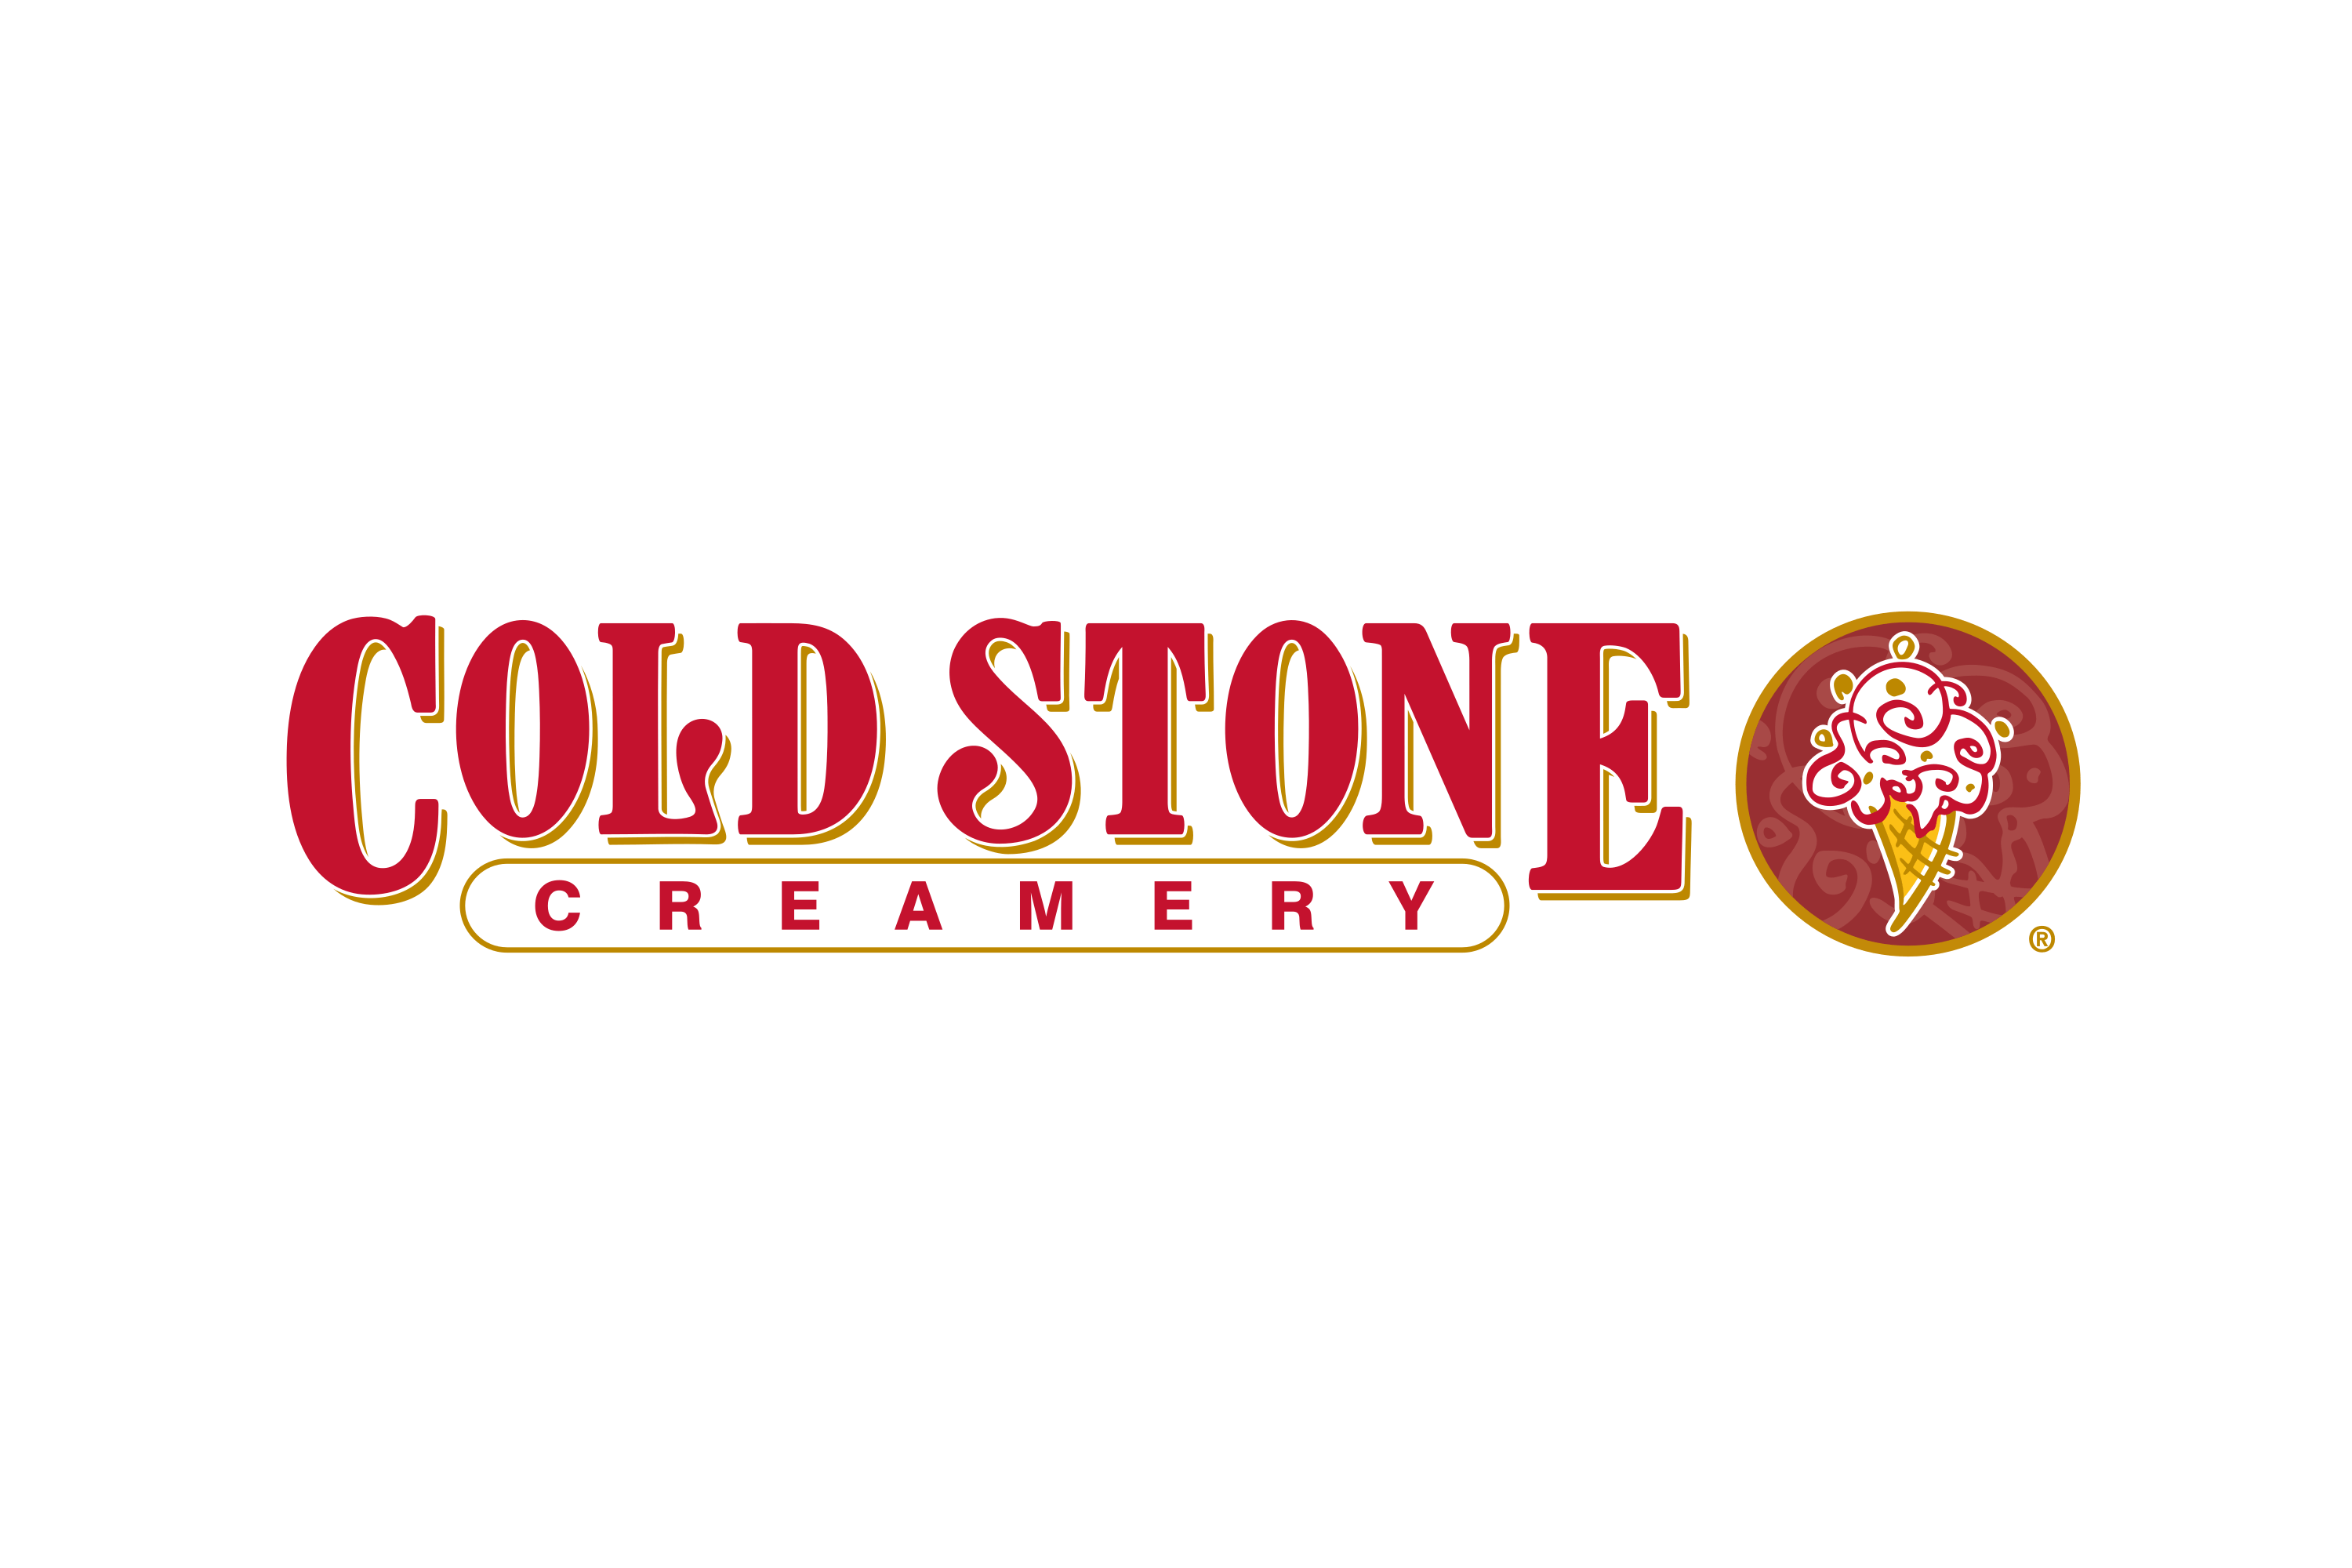 Cold Stone